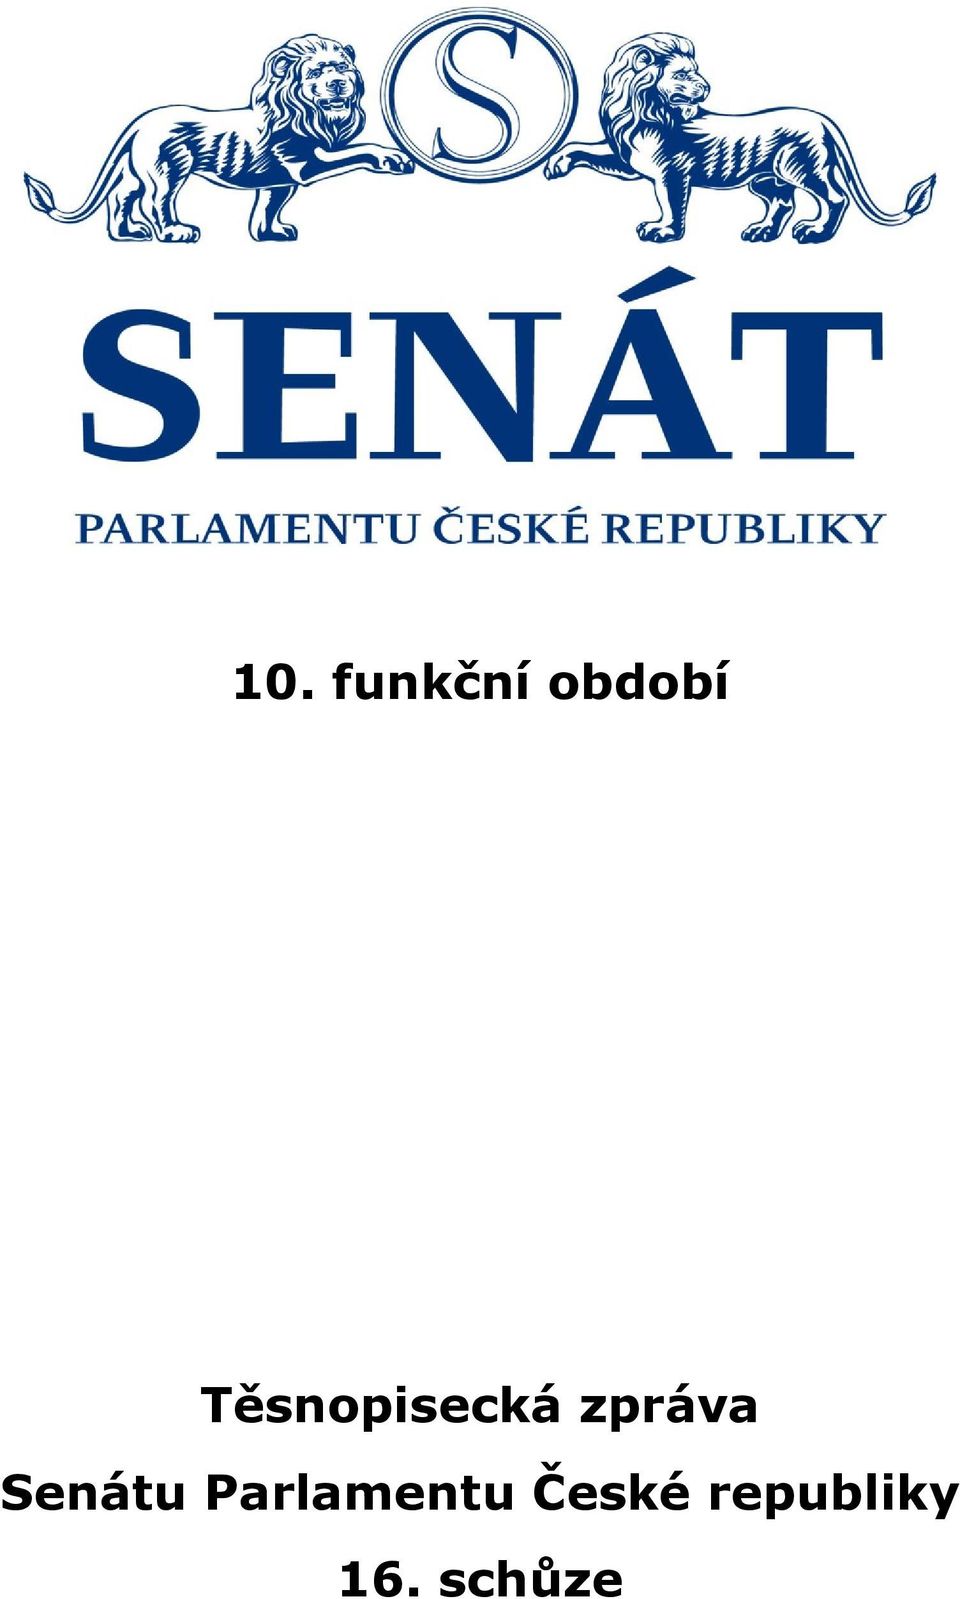 Senátu Parlamentu